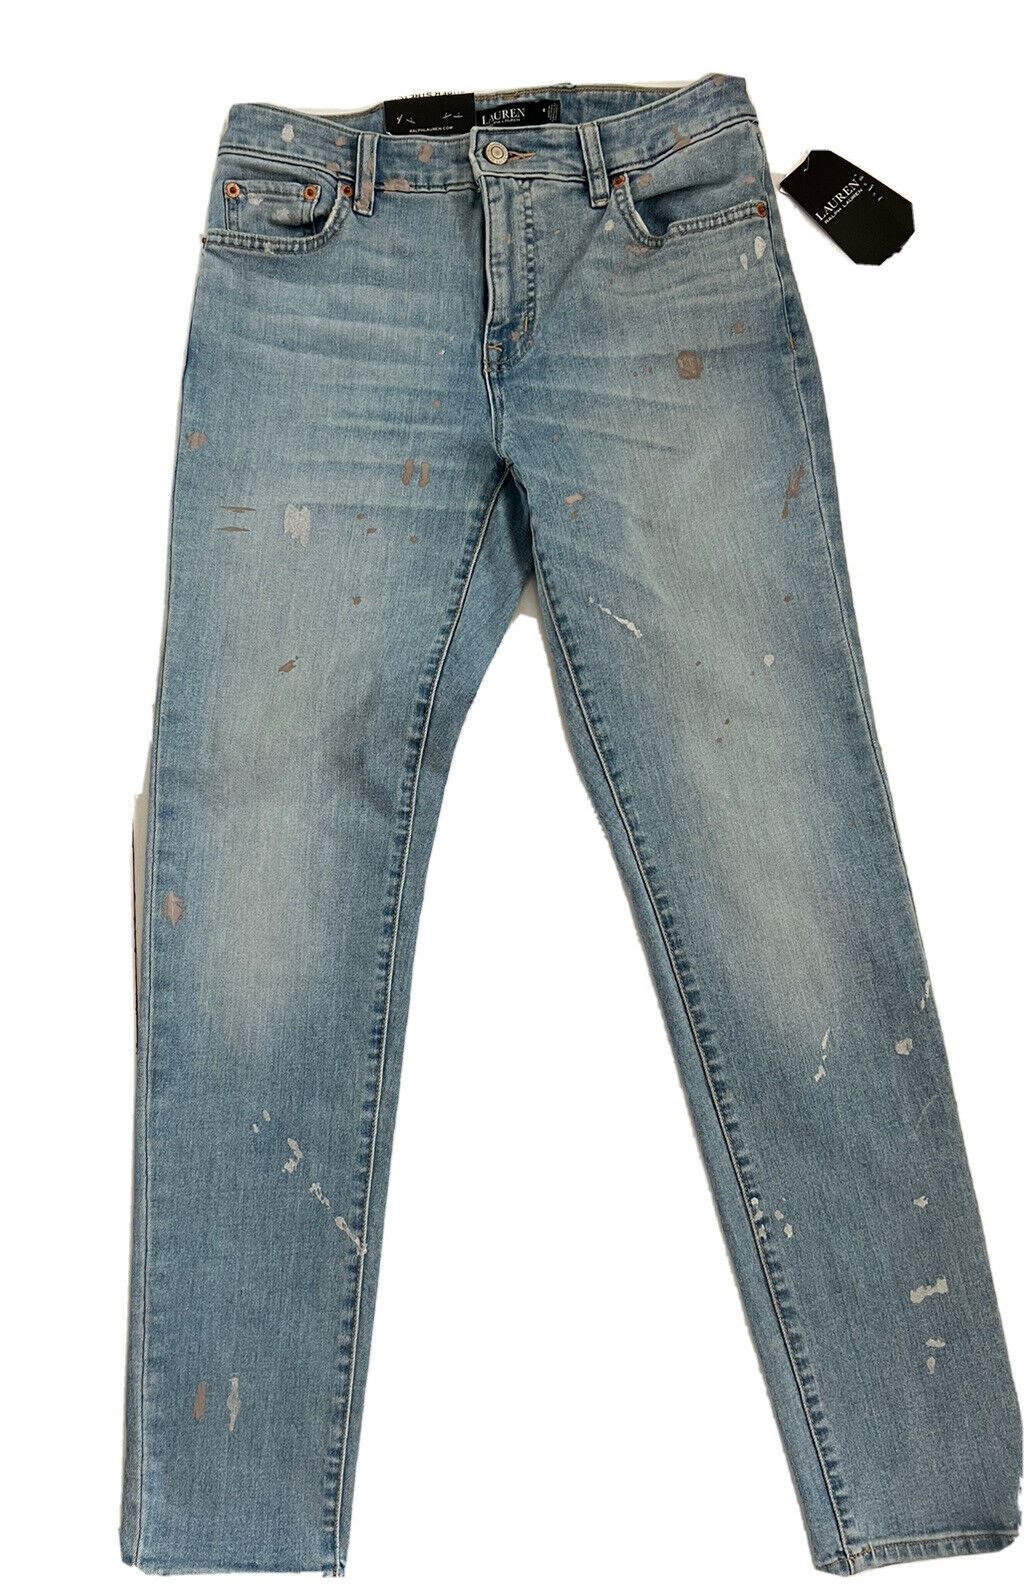 NWT $99.95 Lauren Ralph Lauren Skinny Leg Blue Jeans Size 4  (27 Waist)